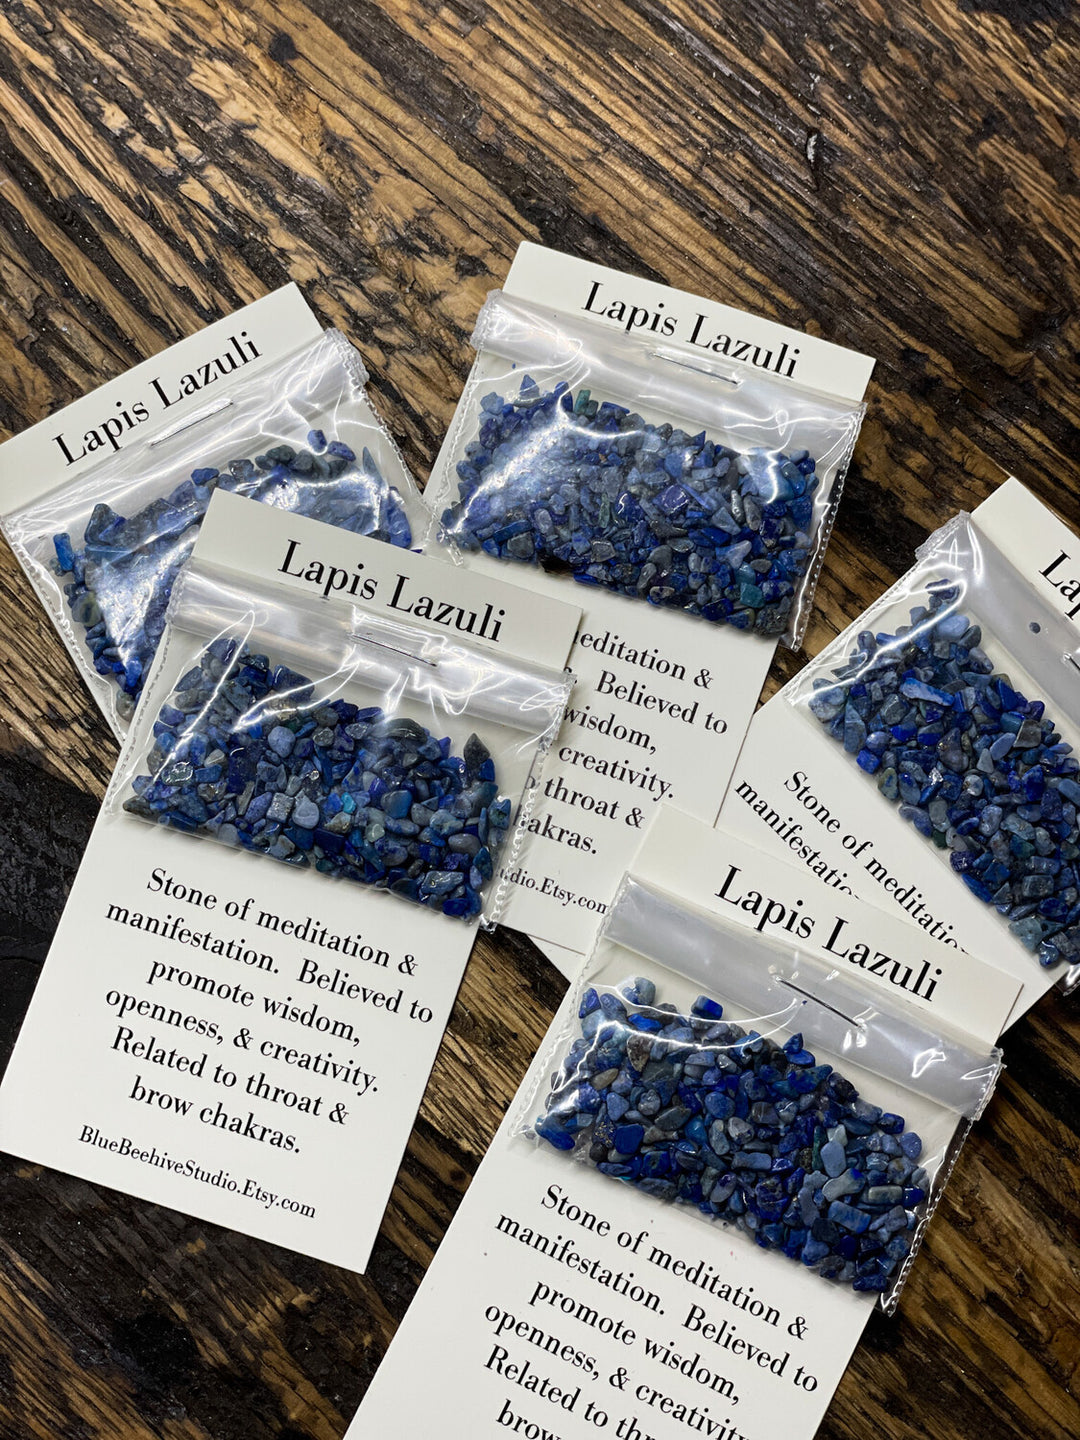 Lapis Lazuli chips